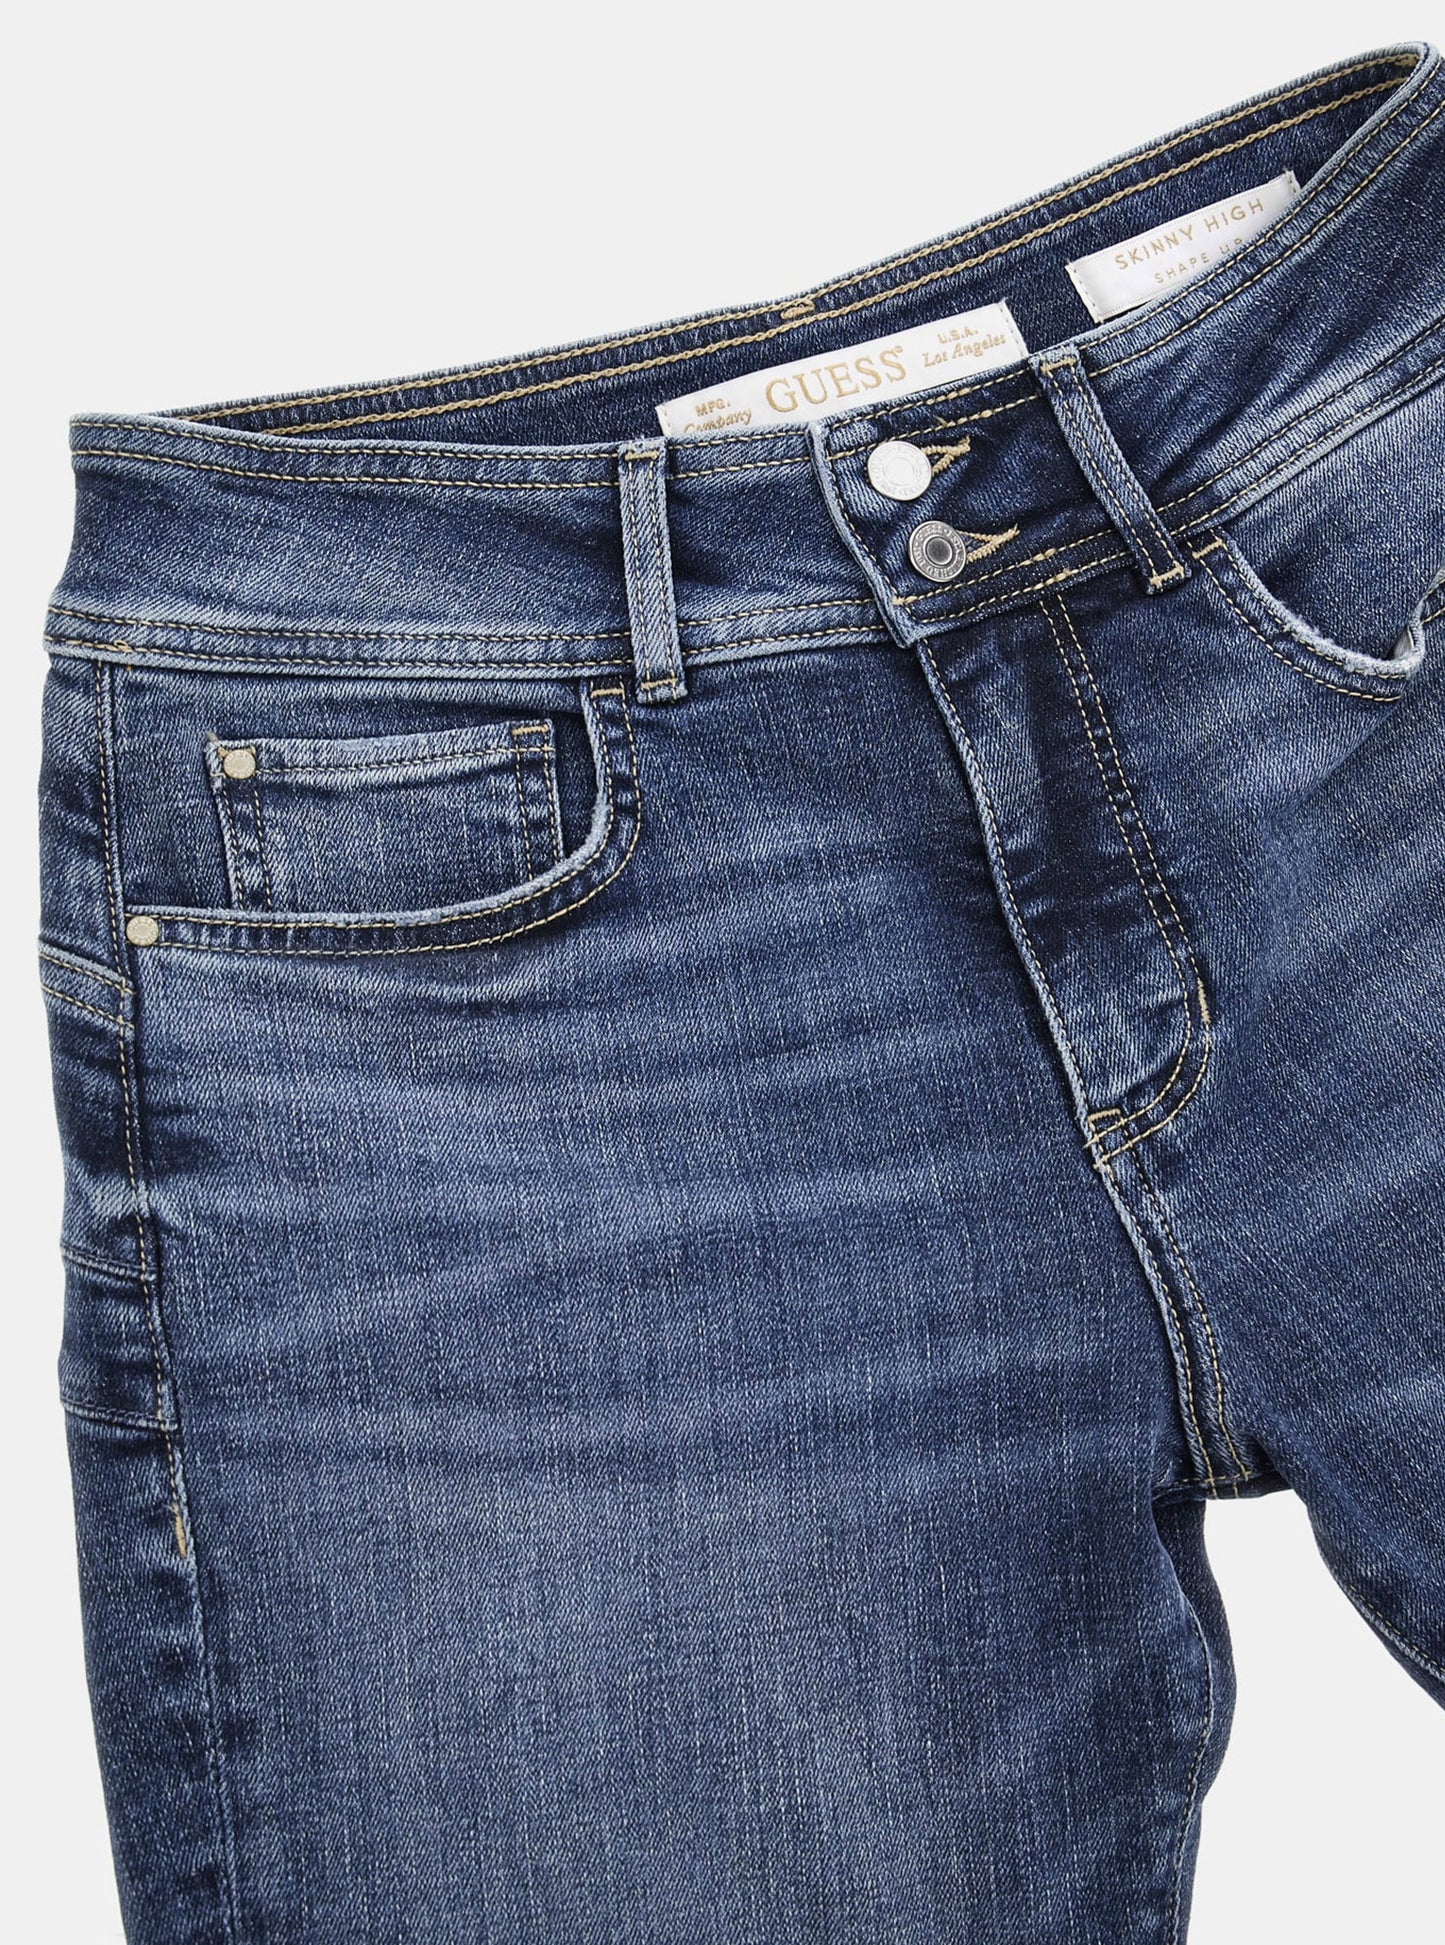 Blue Shape Up Denim Jeans | GUESS Women's Apparel | detail view